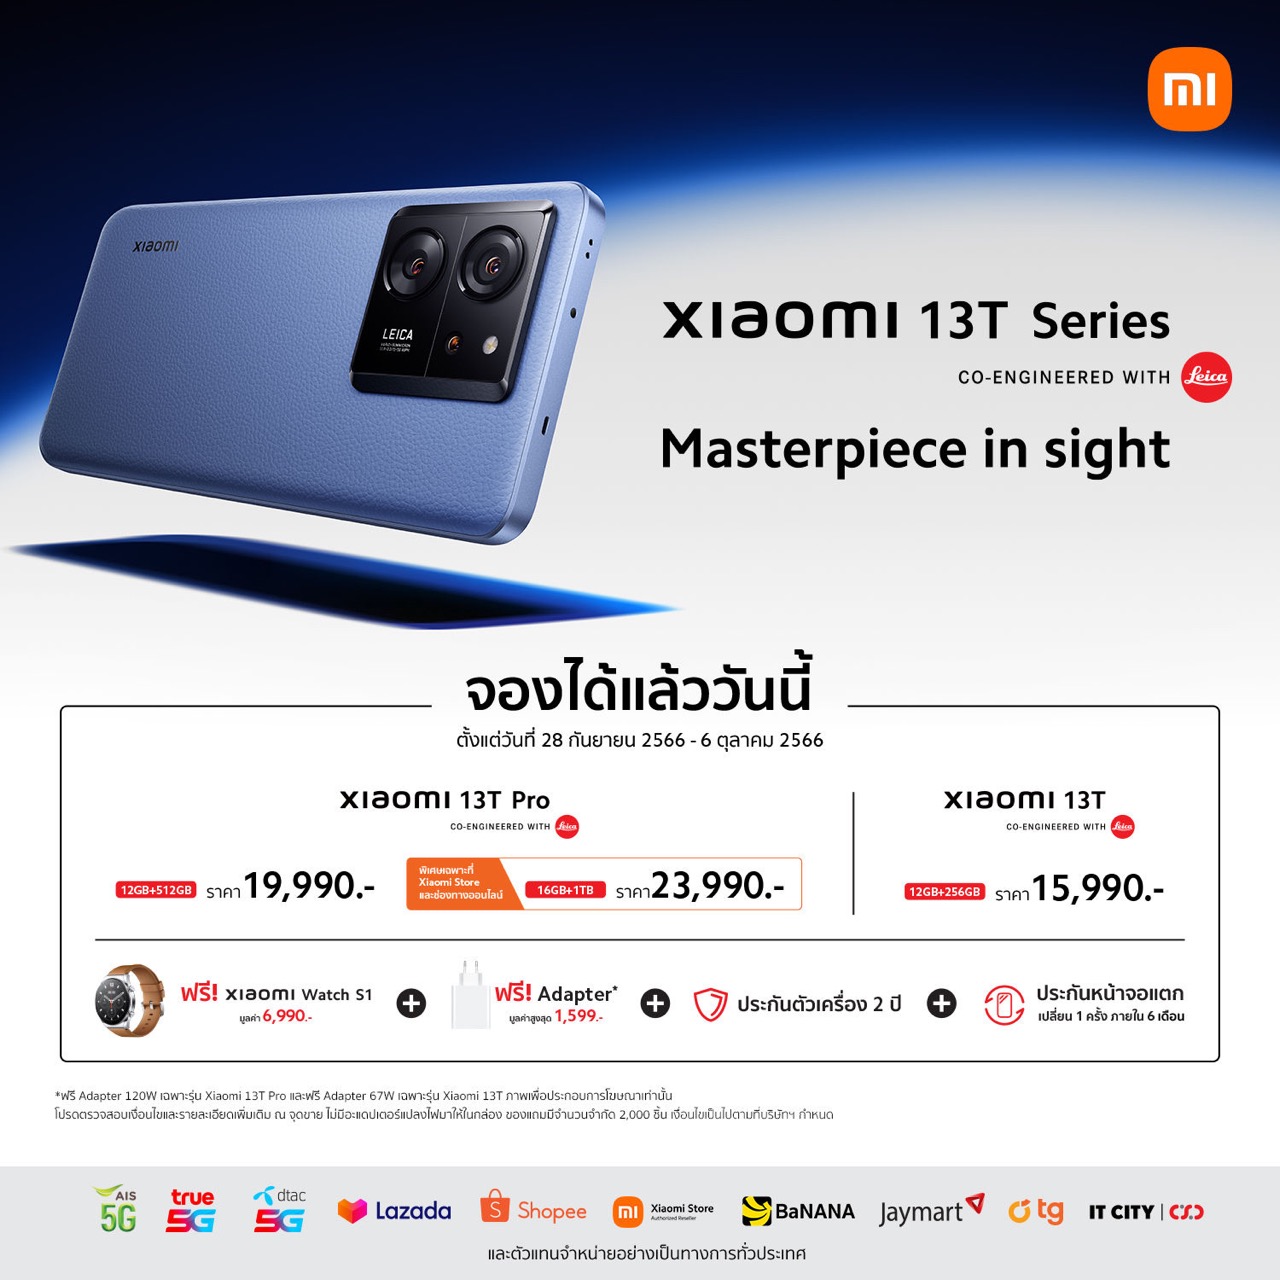 Xiaomi 13T Series